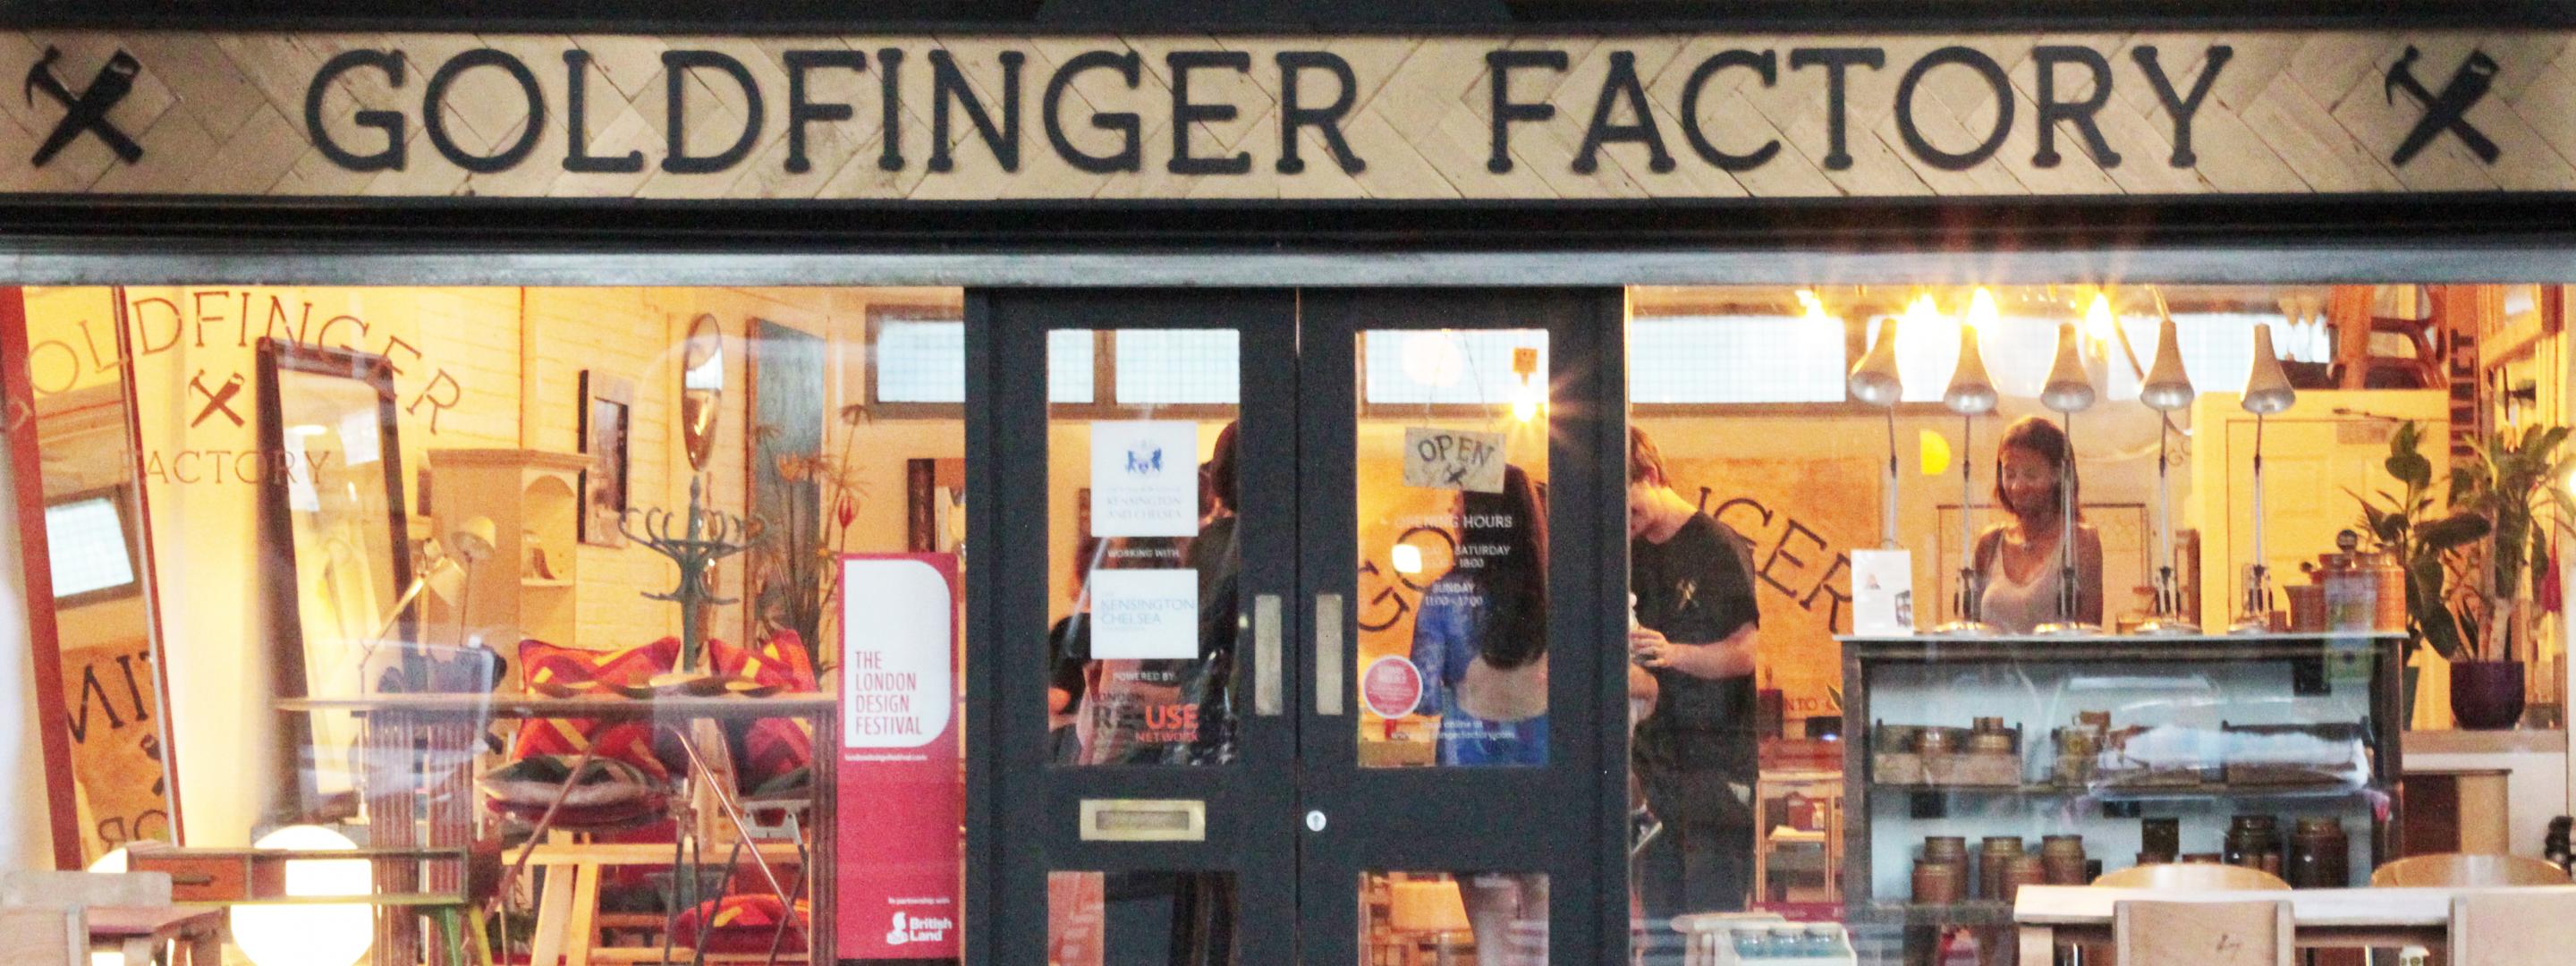 Goldfinger Factory shop front